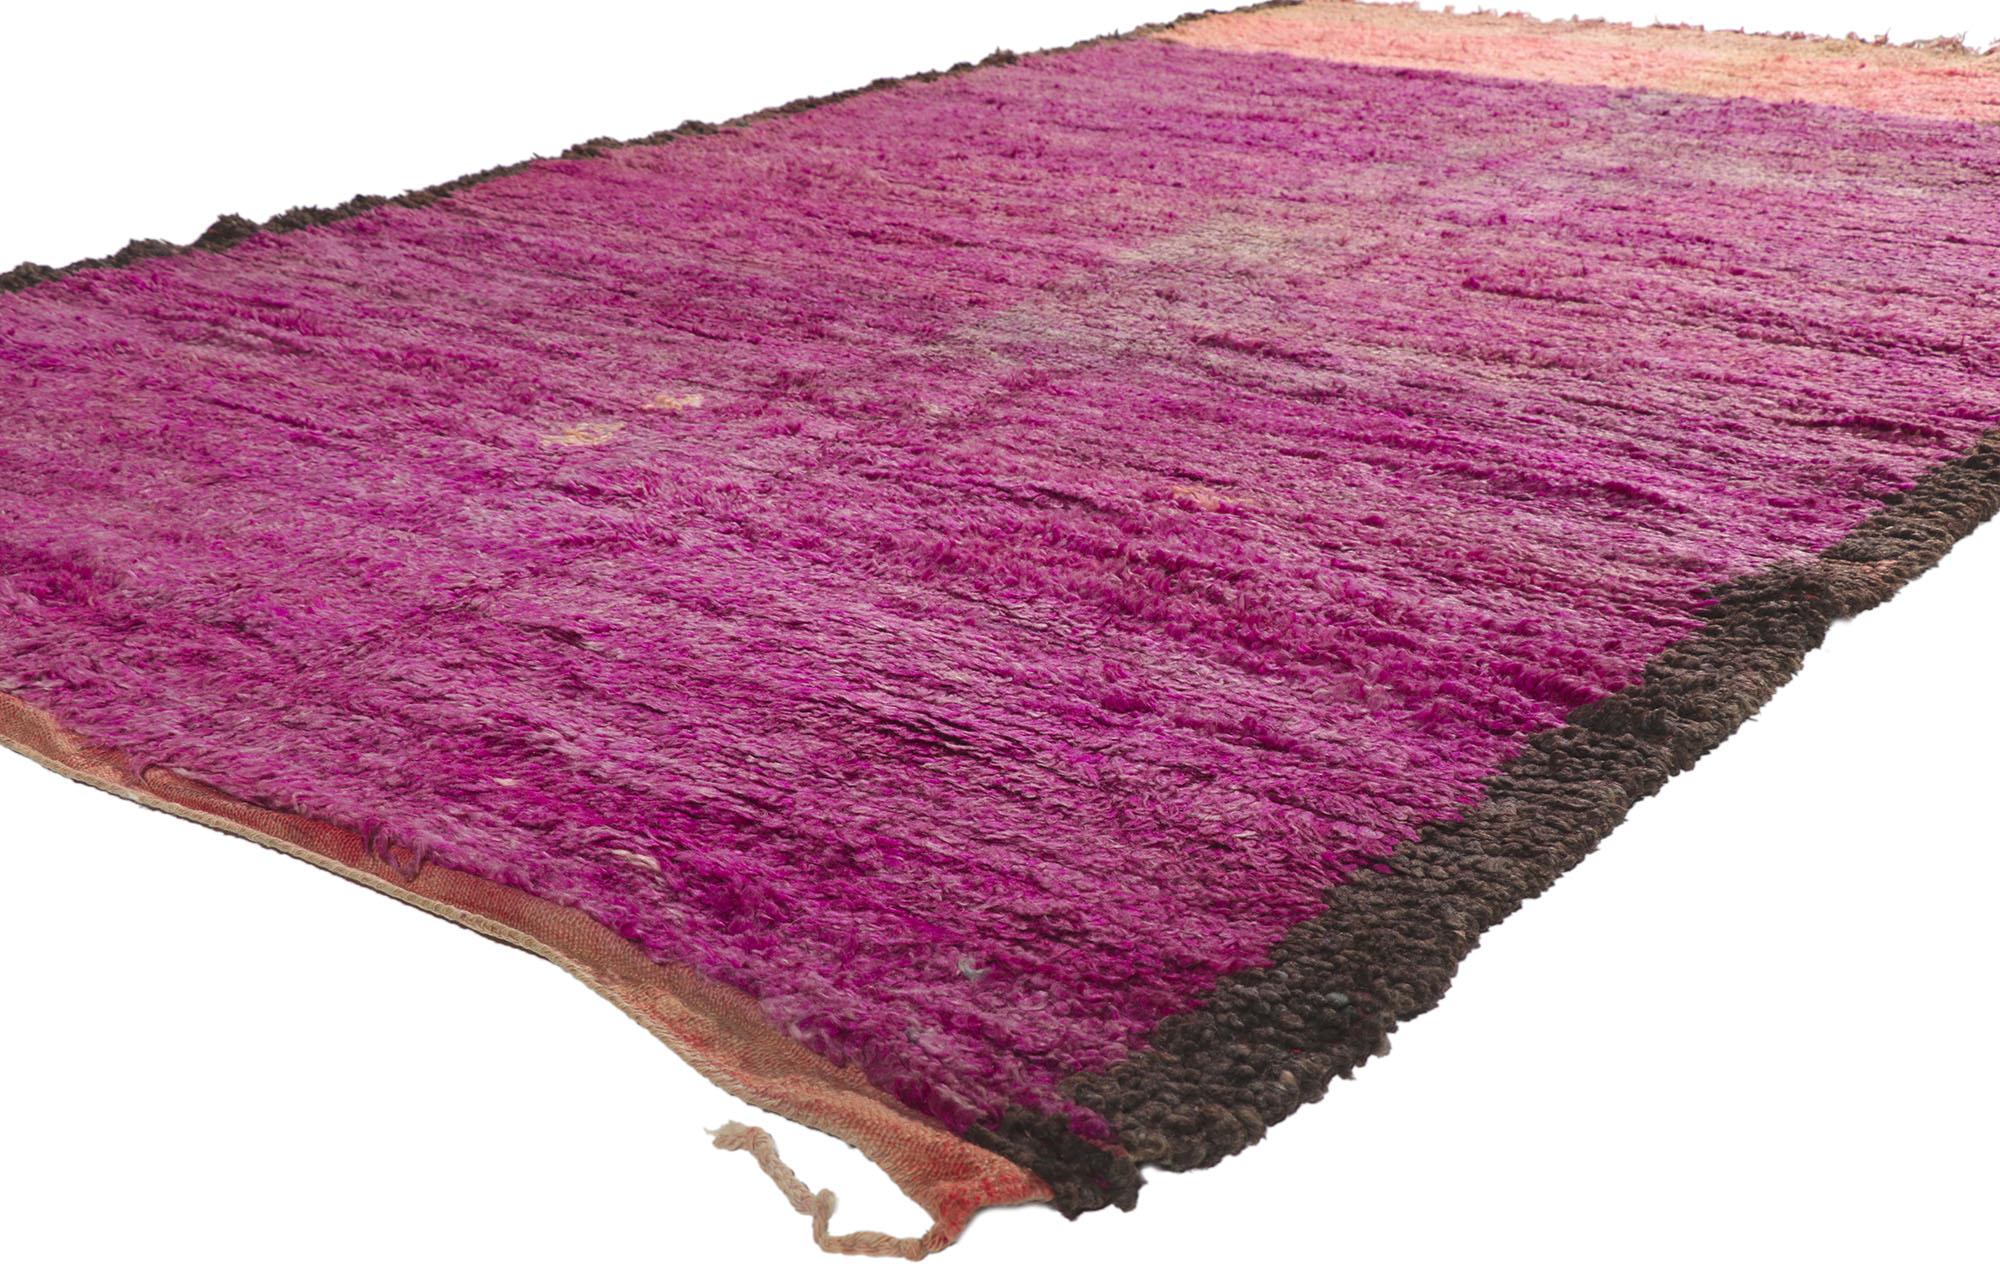 21219 Vintage Beni Mrirt Marokkanischer Teppich, 06'00 x 09'07.
Dieser handgeknüpfte marokkanische Beni Mrirt-Teppich aus Wolle ist von müheloser Schönheit und Schlichtheit. Die mit Magenta- und Rosatönen durchsetzten, reichhaltigen Wellen aus